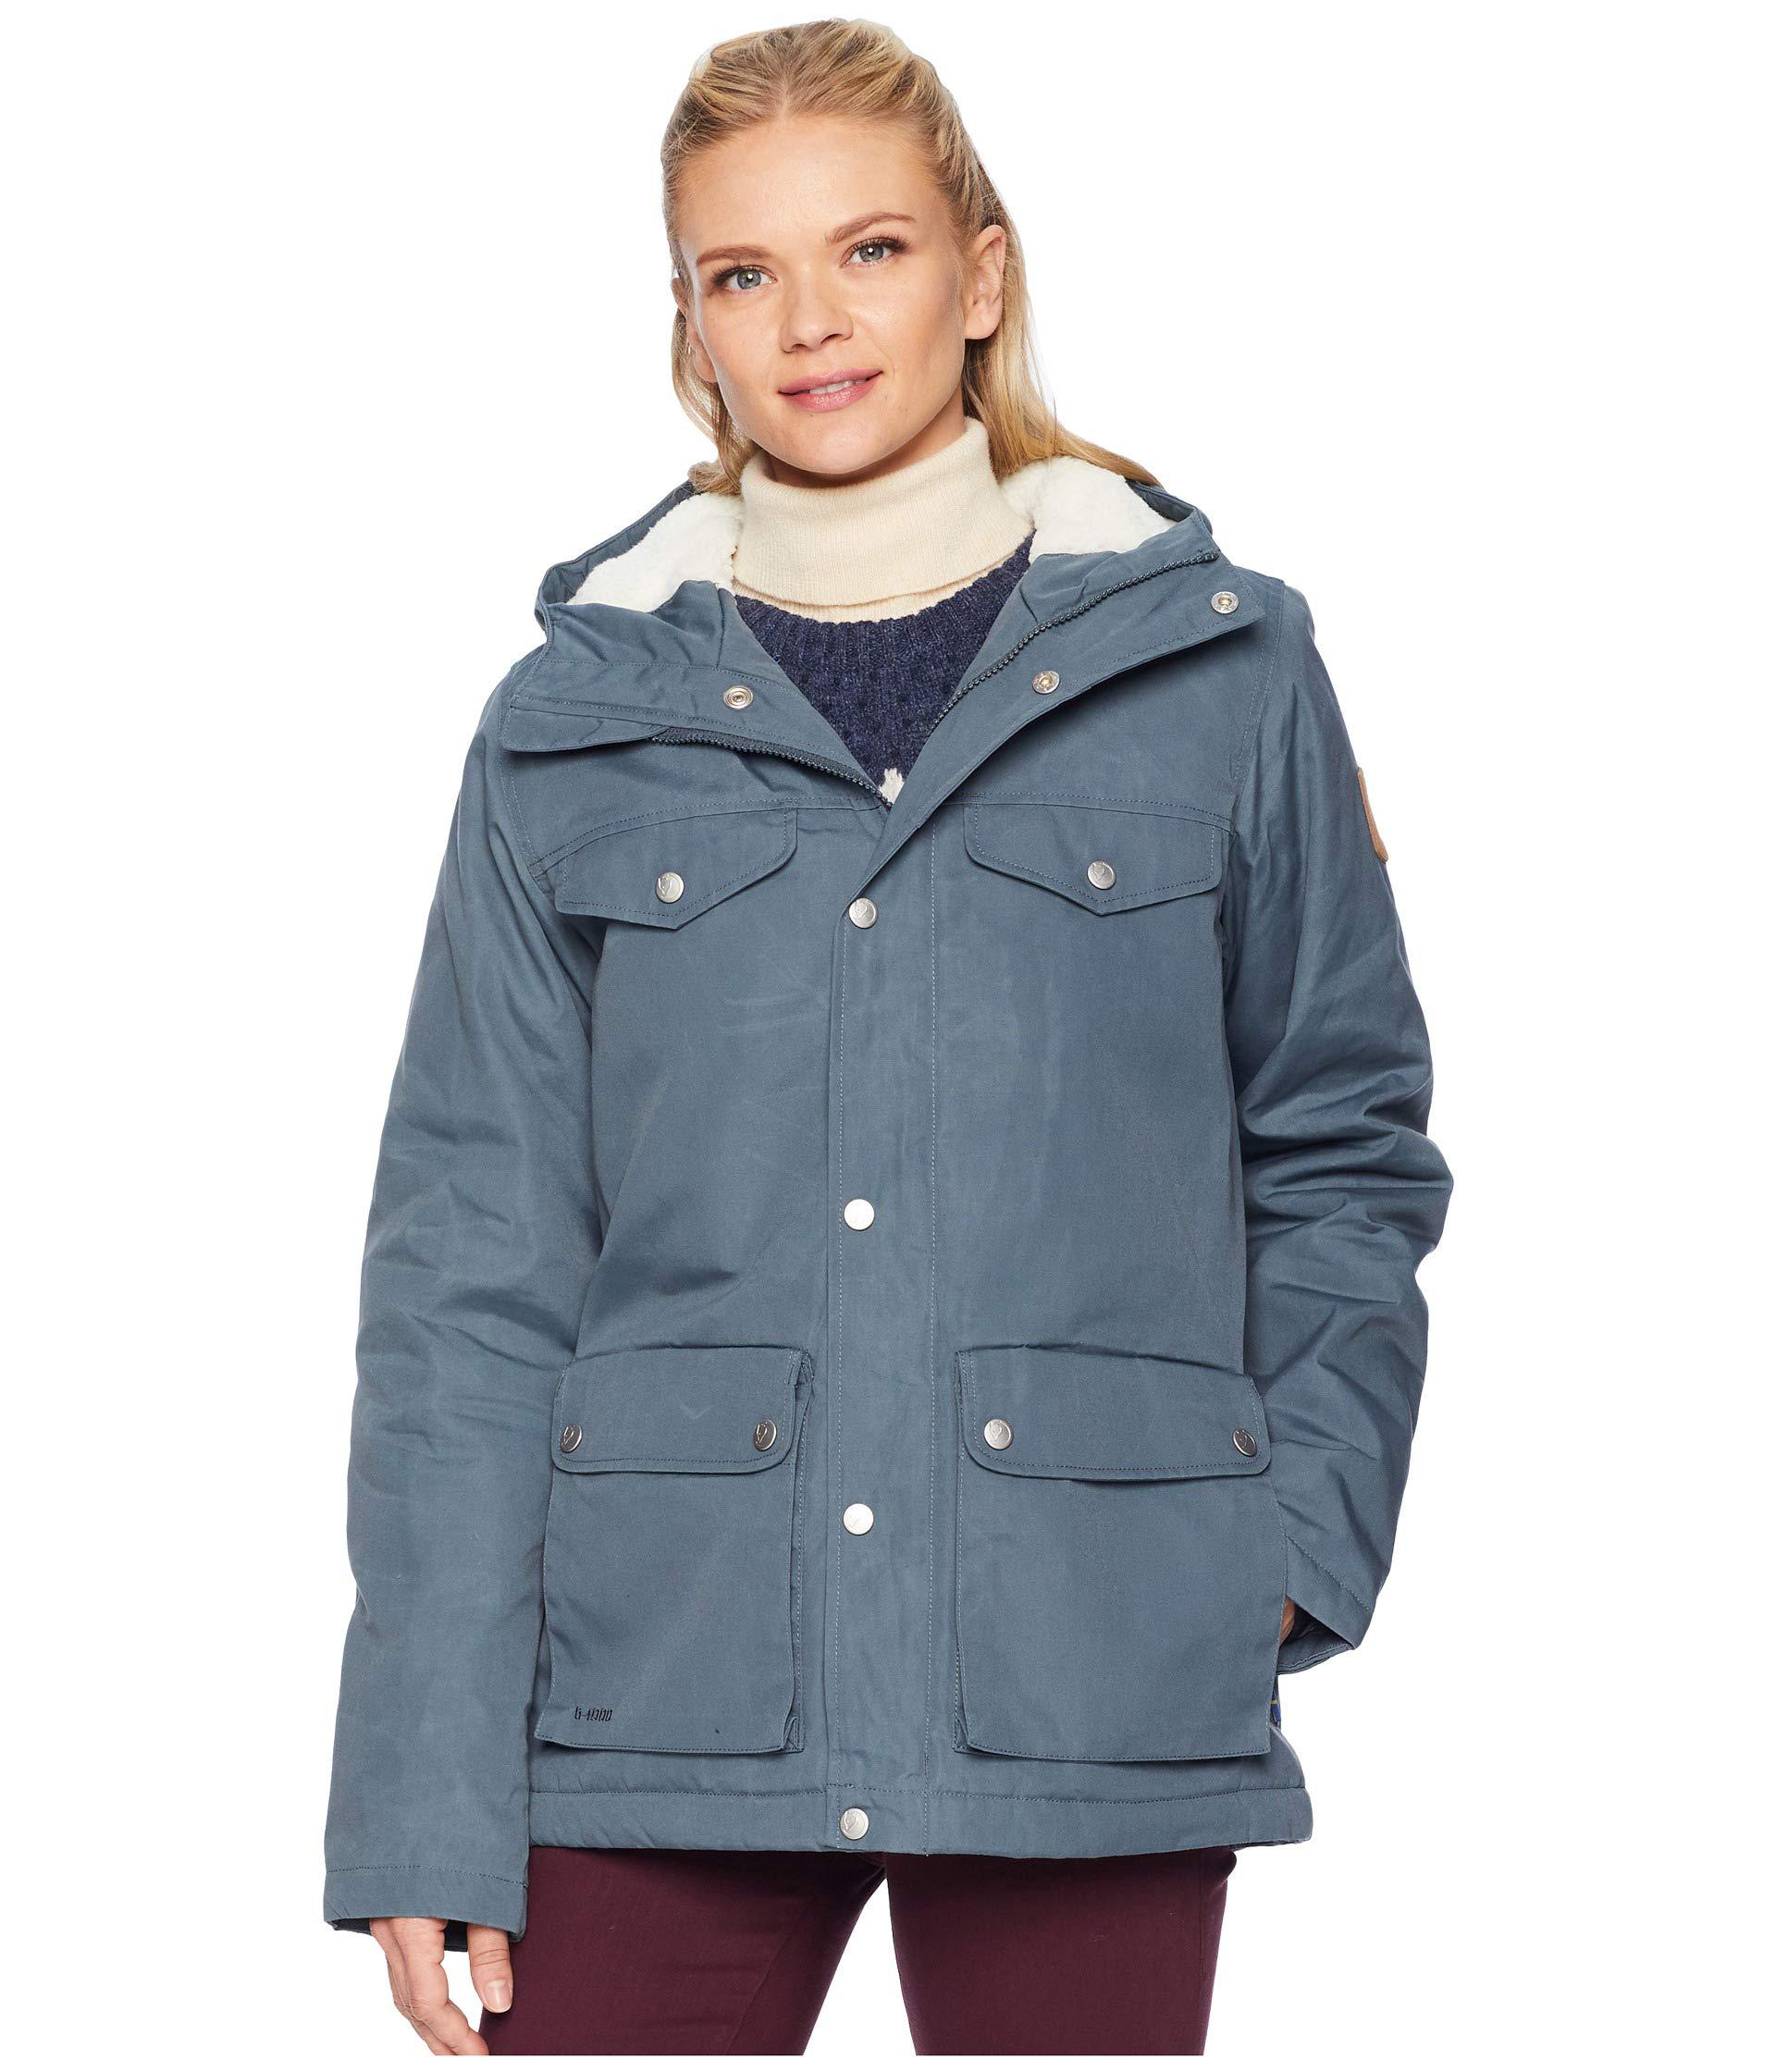 Fjallraven Greenland Winter Jacket Dusk Online Sale, UP TO 58% OFF